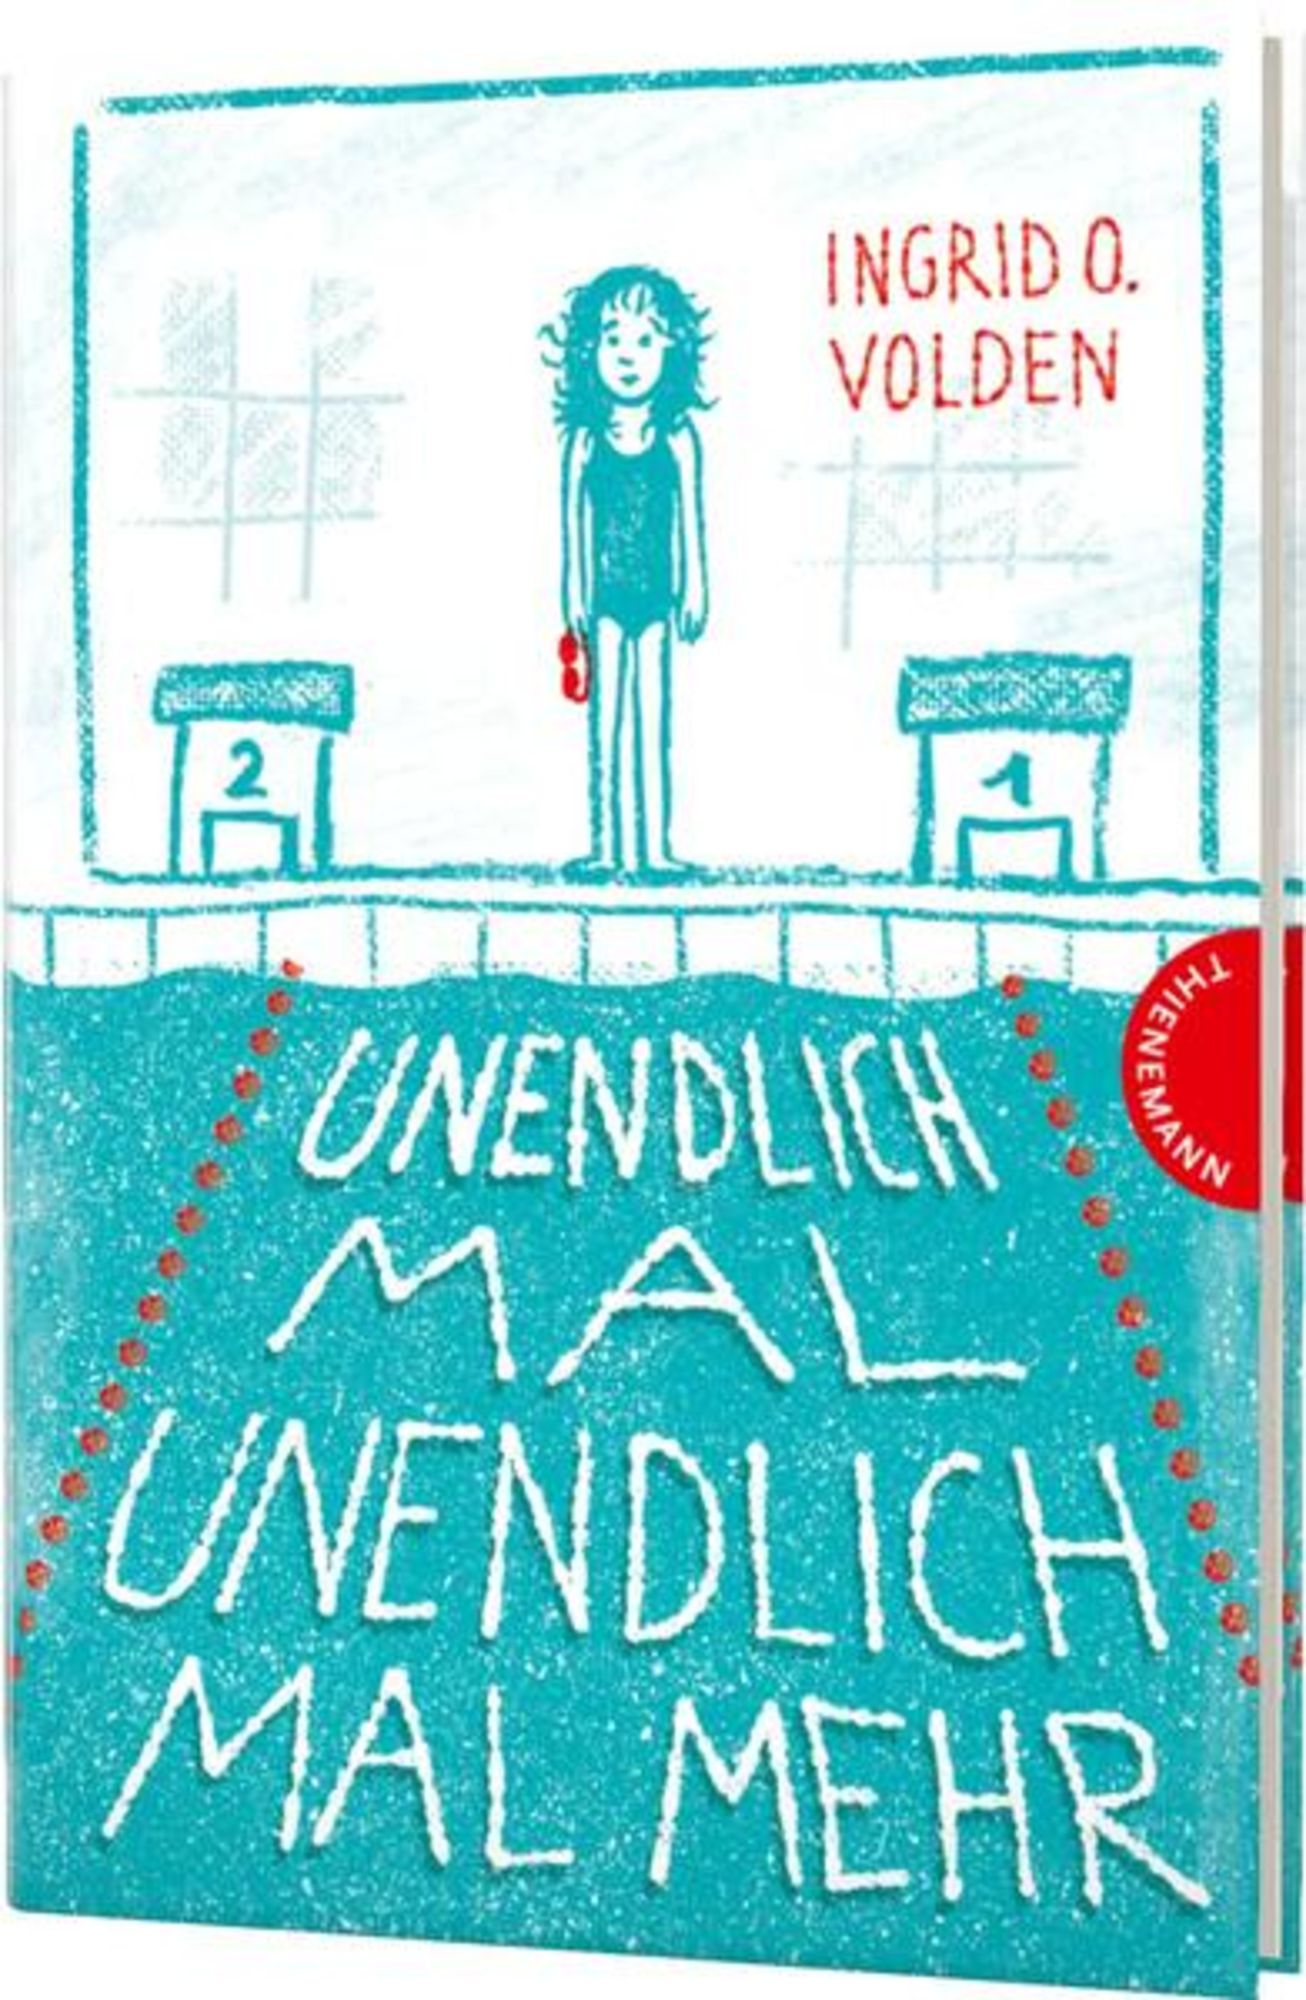 Ovedie　'Ingrid　unendlich　von　Buch　mal　mal　Unendlich　'978-3-522-18461-8'　mehr'　Volden'